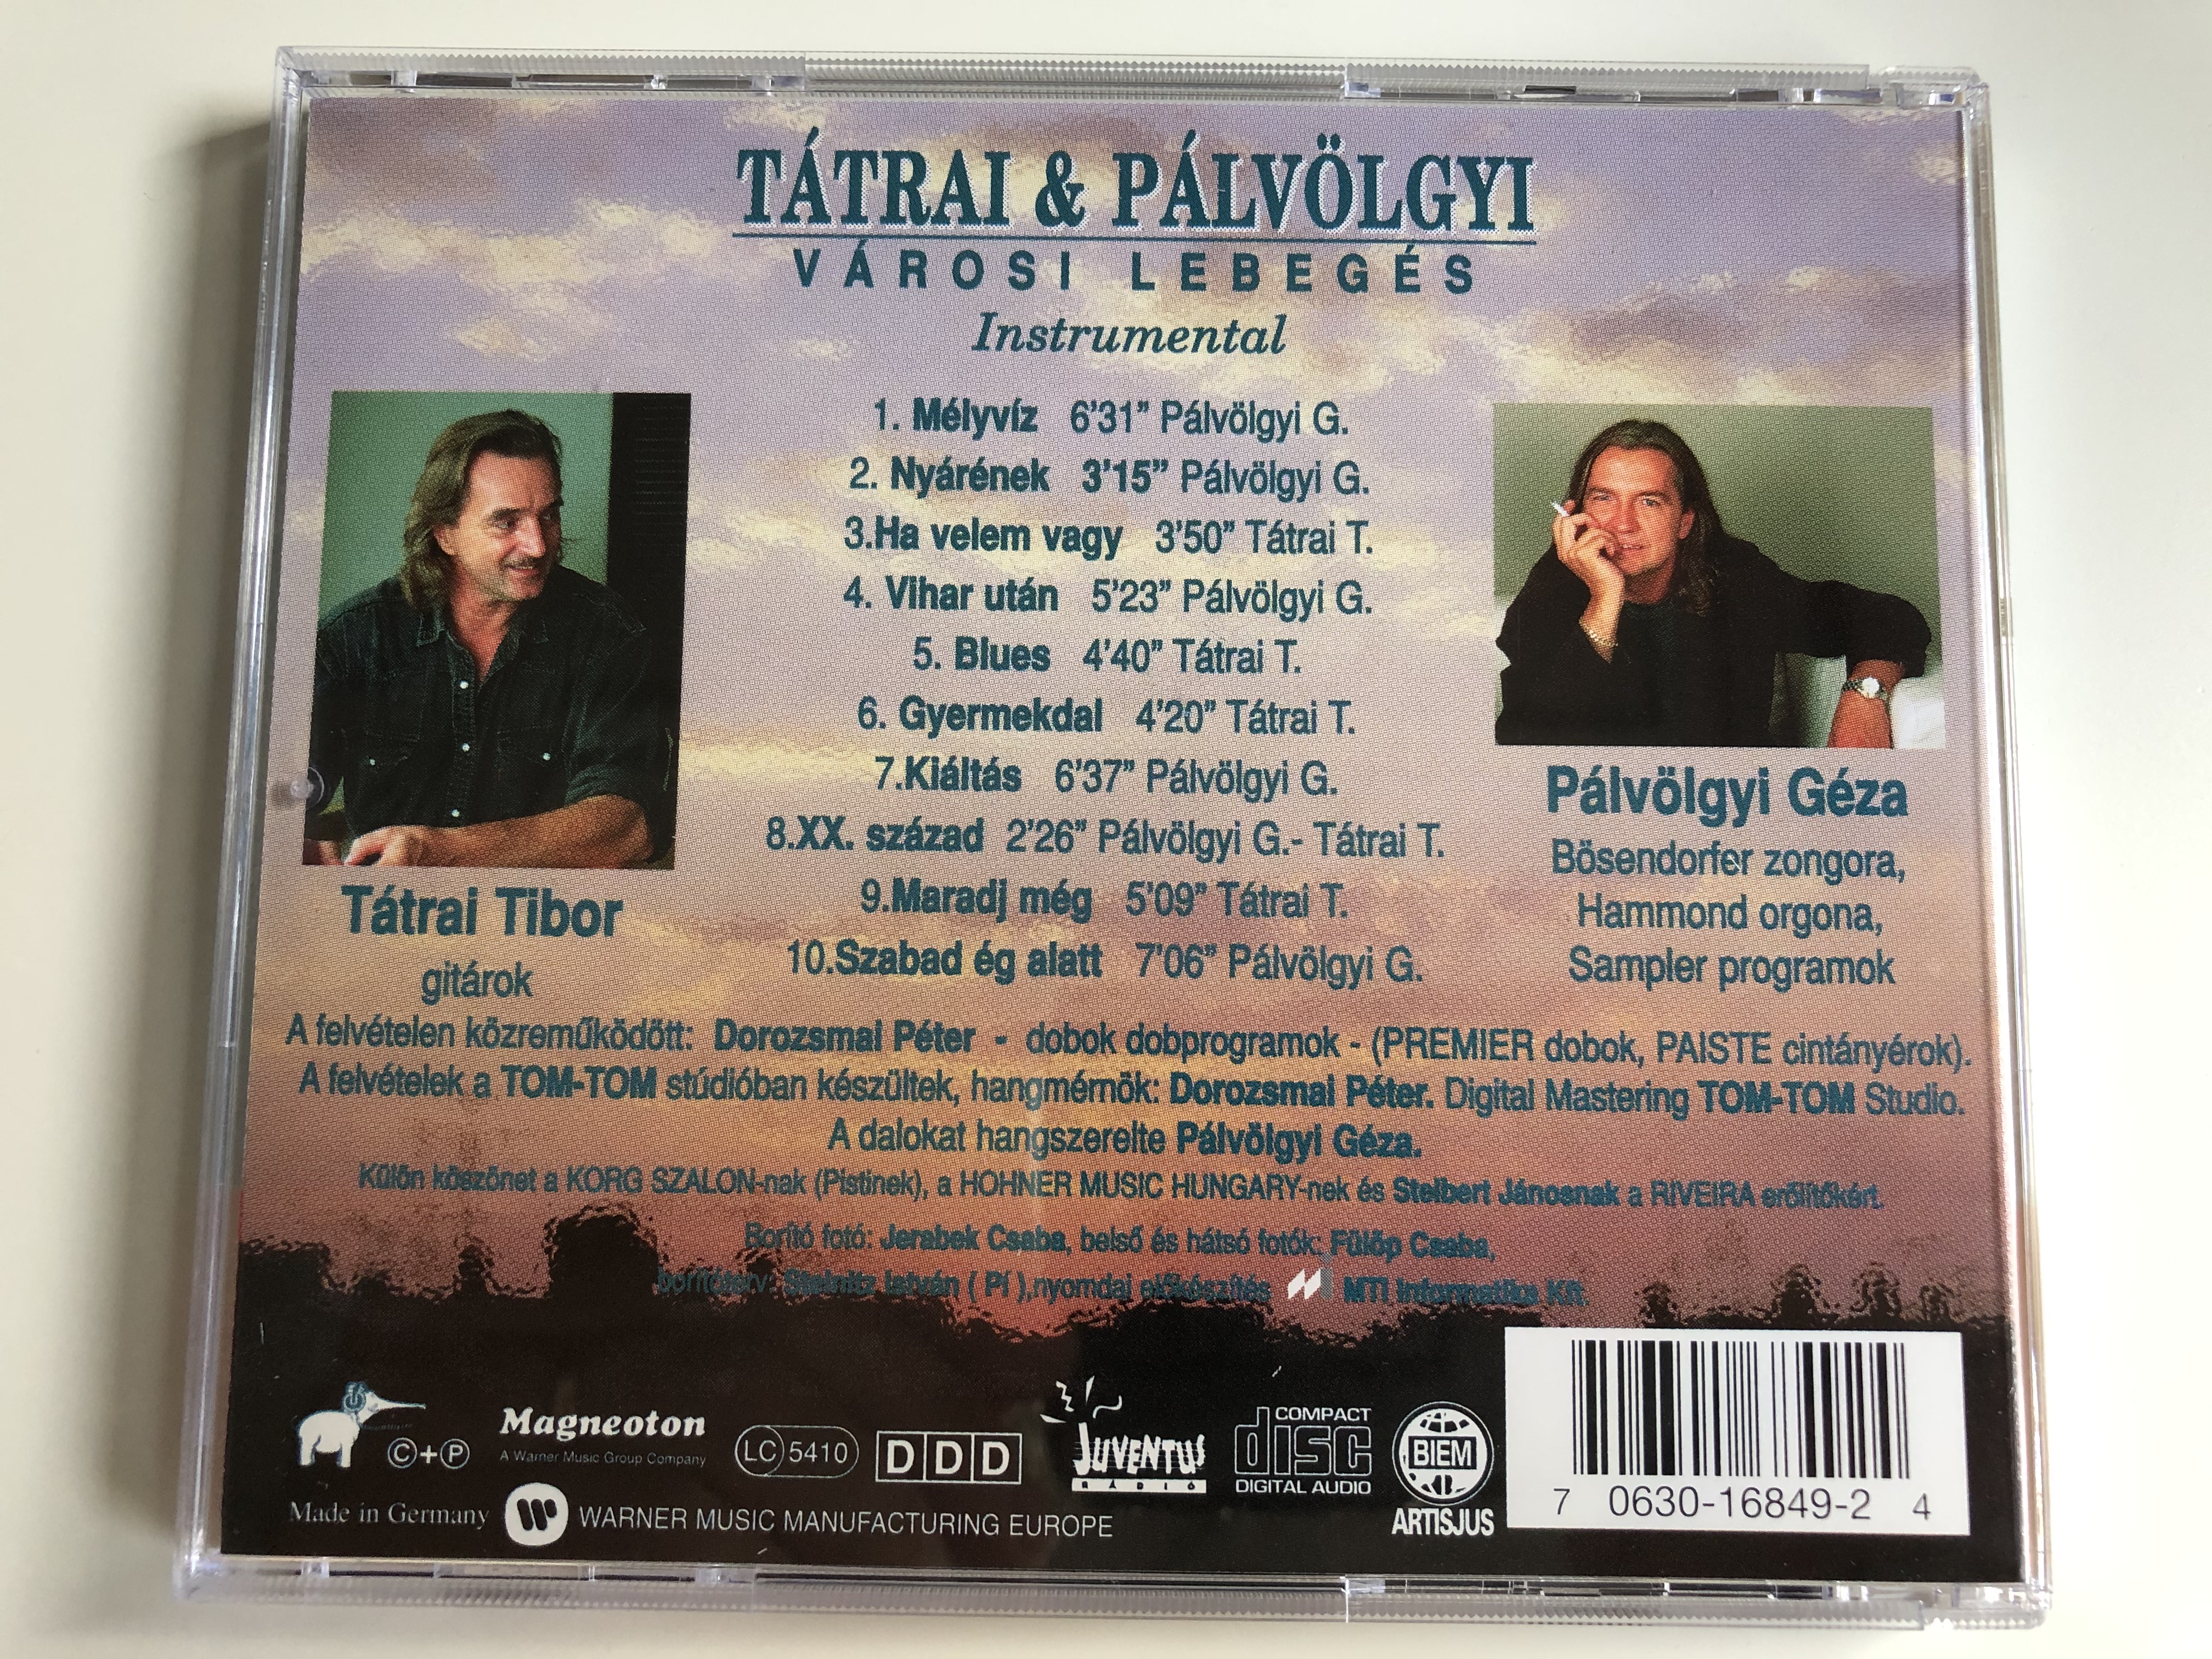 t-trai-palvolgyi-varosi-lebeges-instrumental-trilogia-3-magneoton-audio-cd-0630-16849-2-5-.jpg